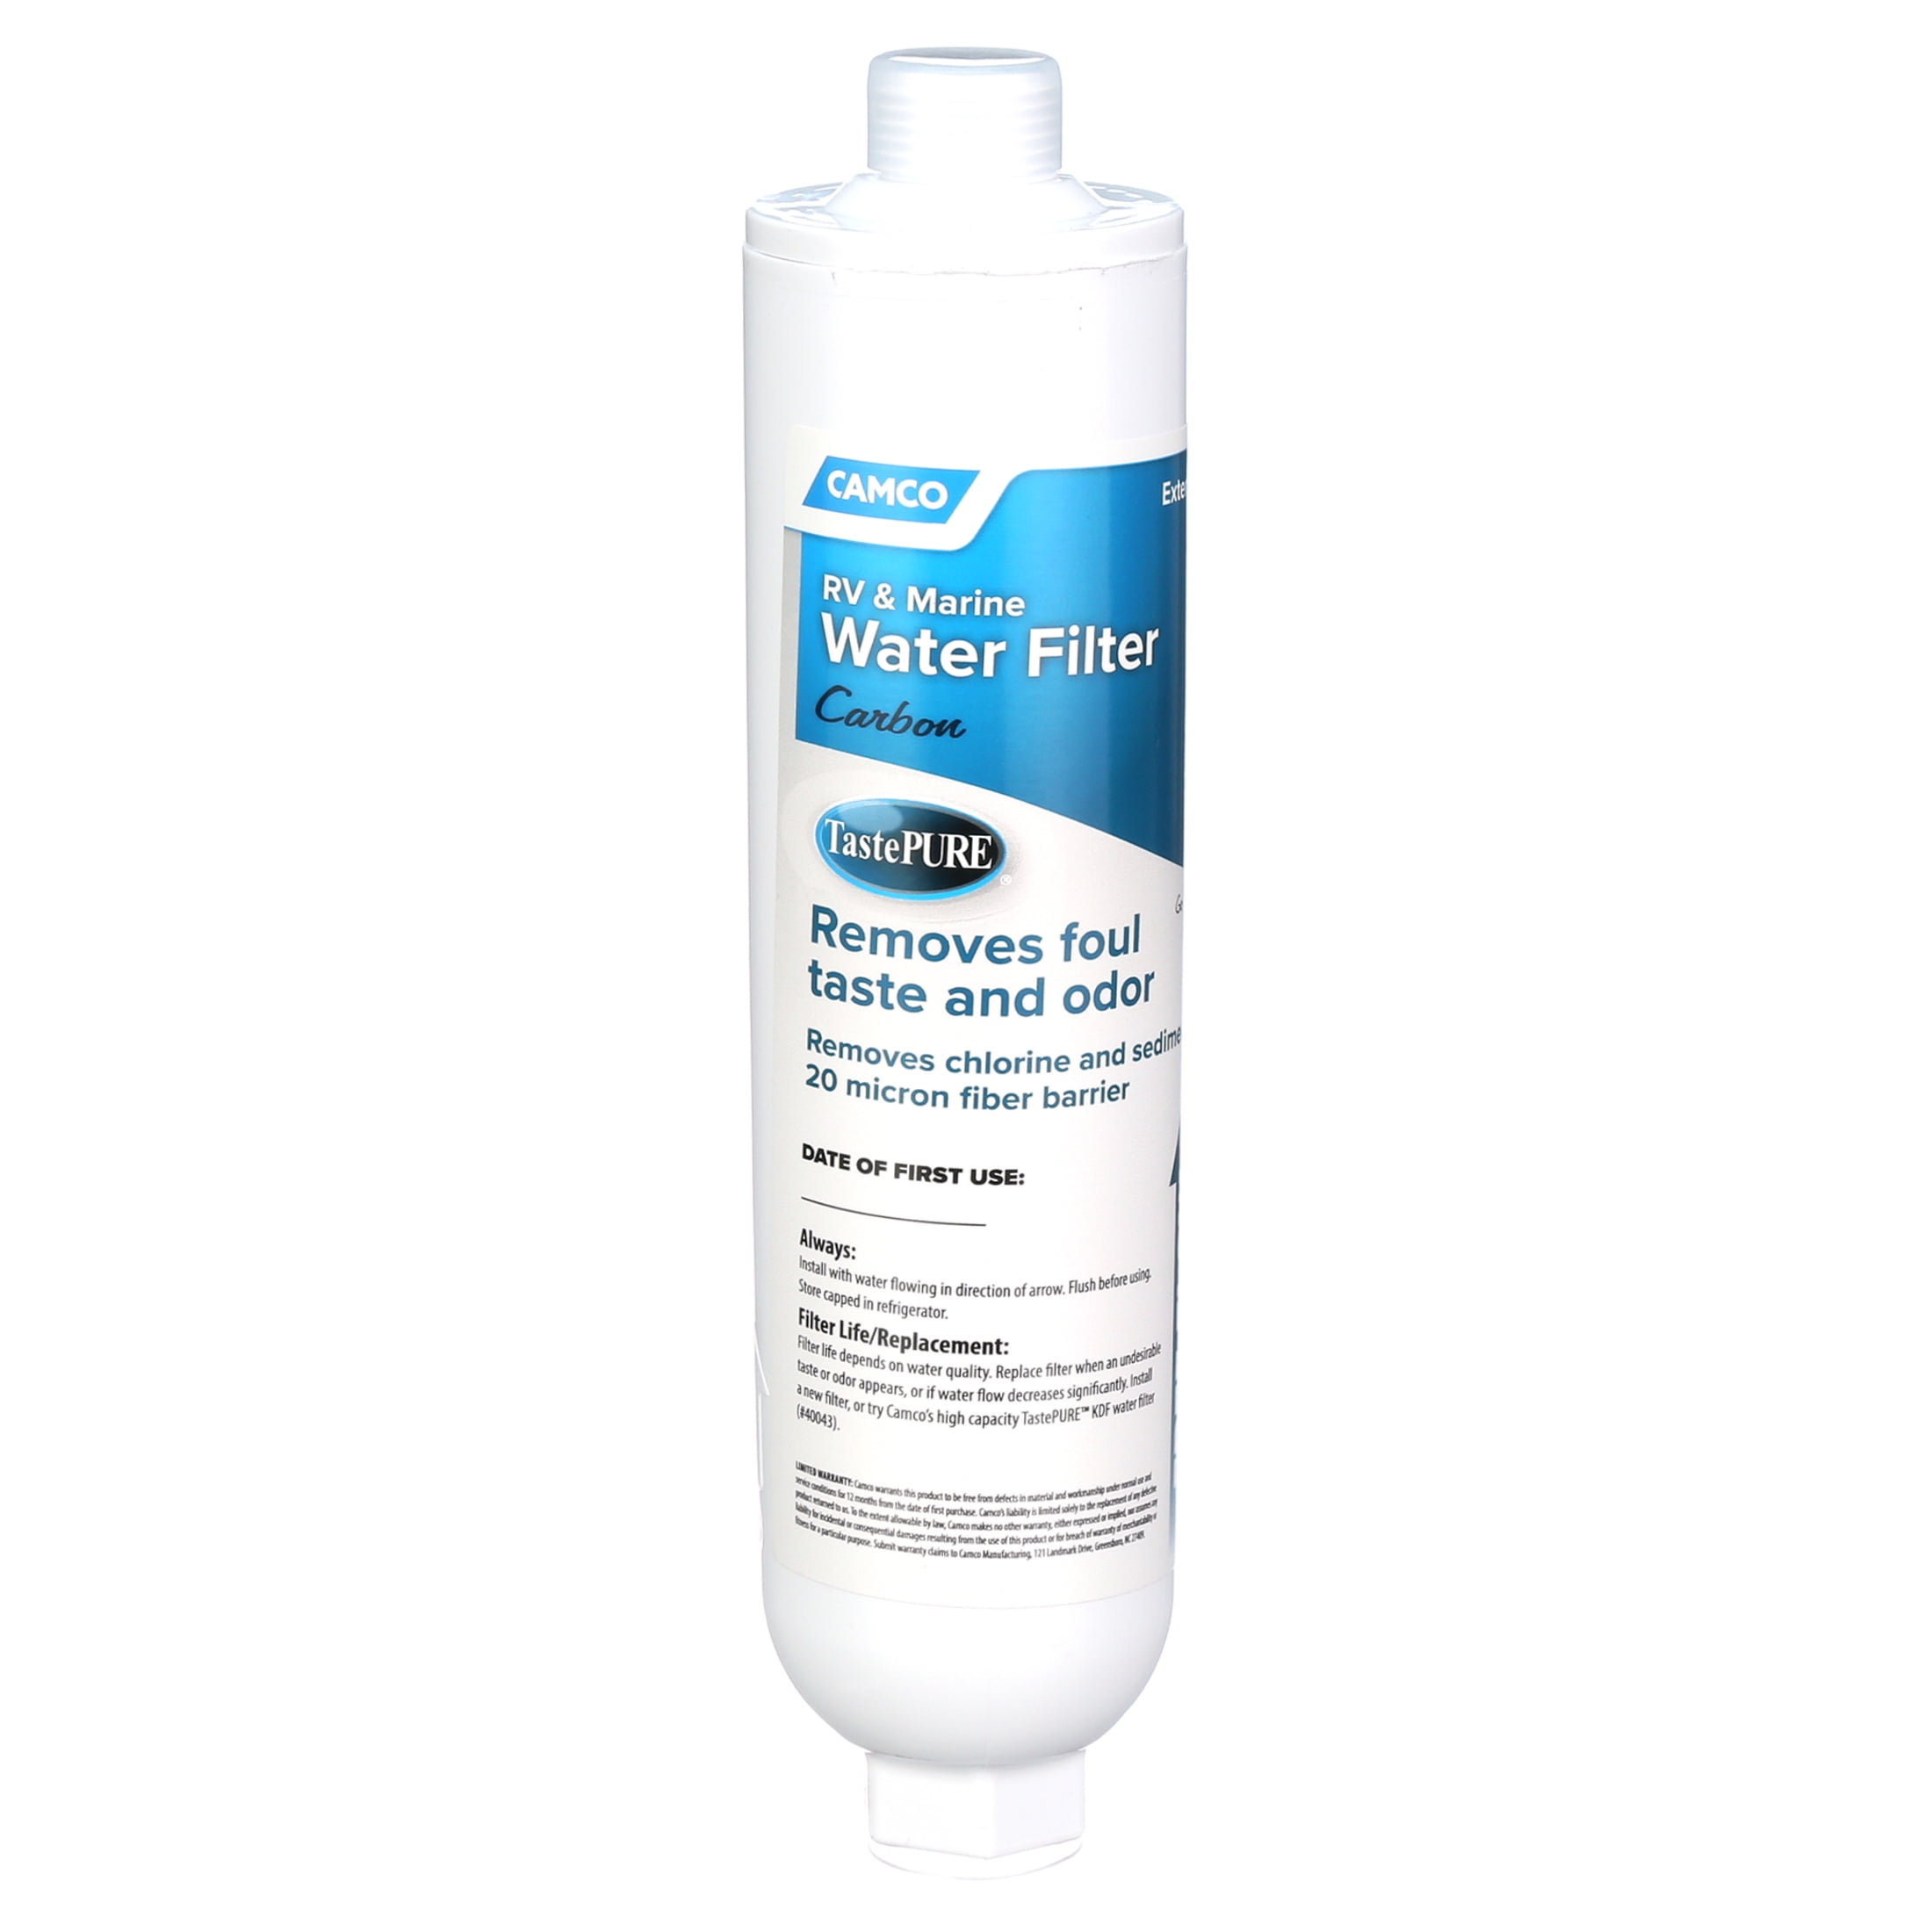 Camco TastePURE XL Camper/RV Water Filter & Hose Protector | Inline Water  Filter Reduces Bad Taste, Odor, Chlorine & More | Ideal for RVs, Campers